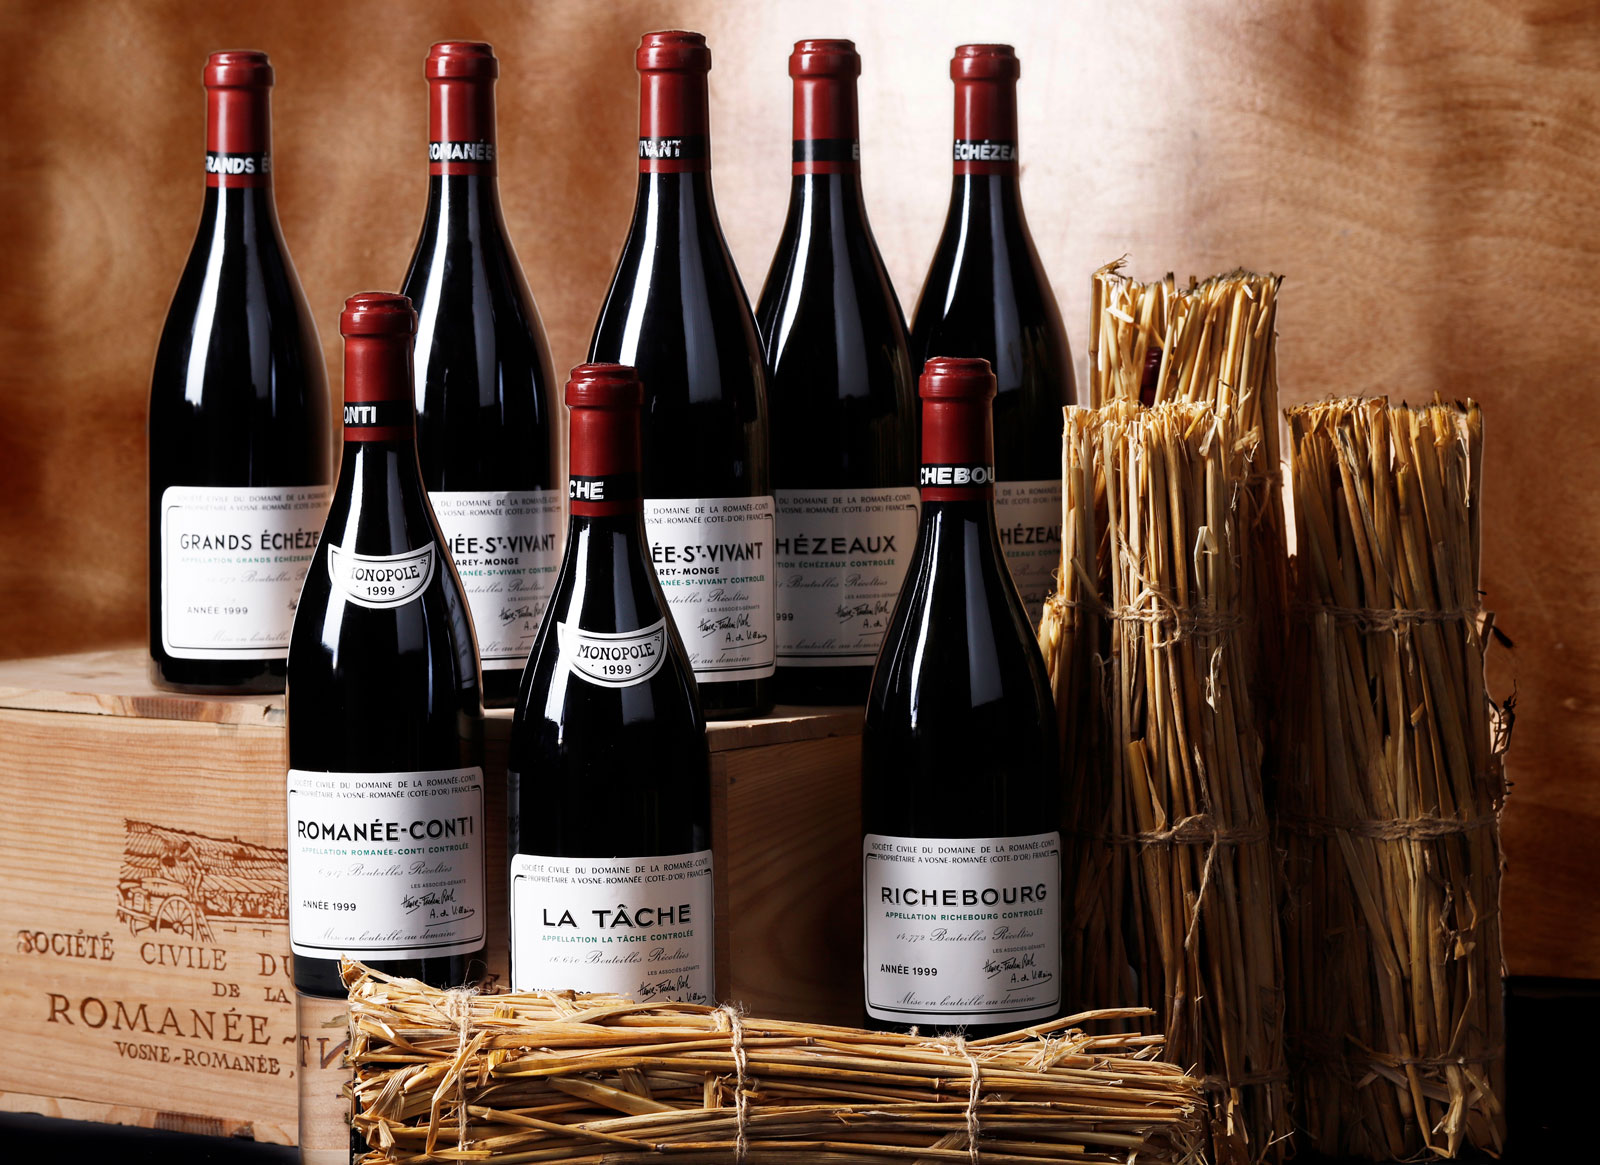 Belgium wine watchers & best wine auctions